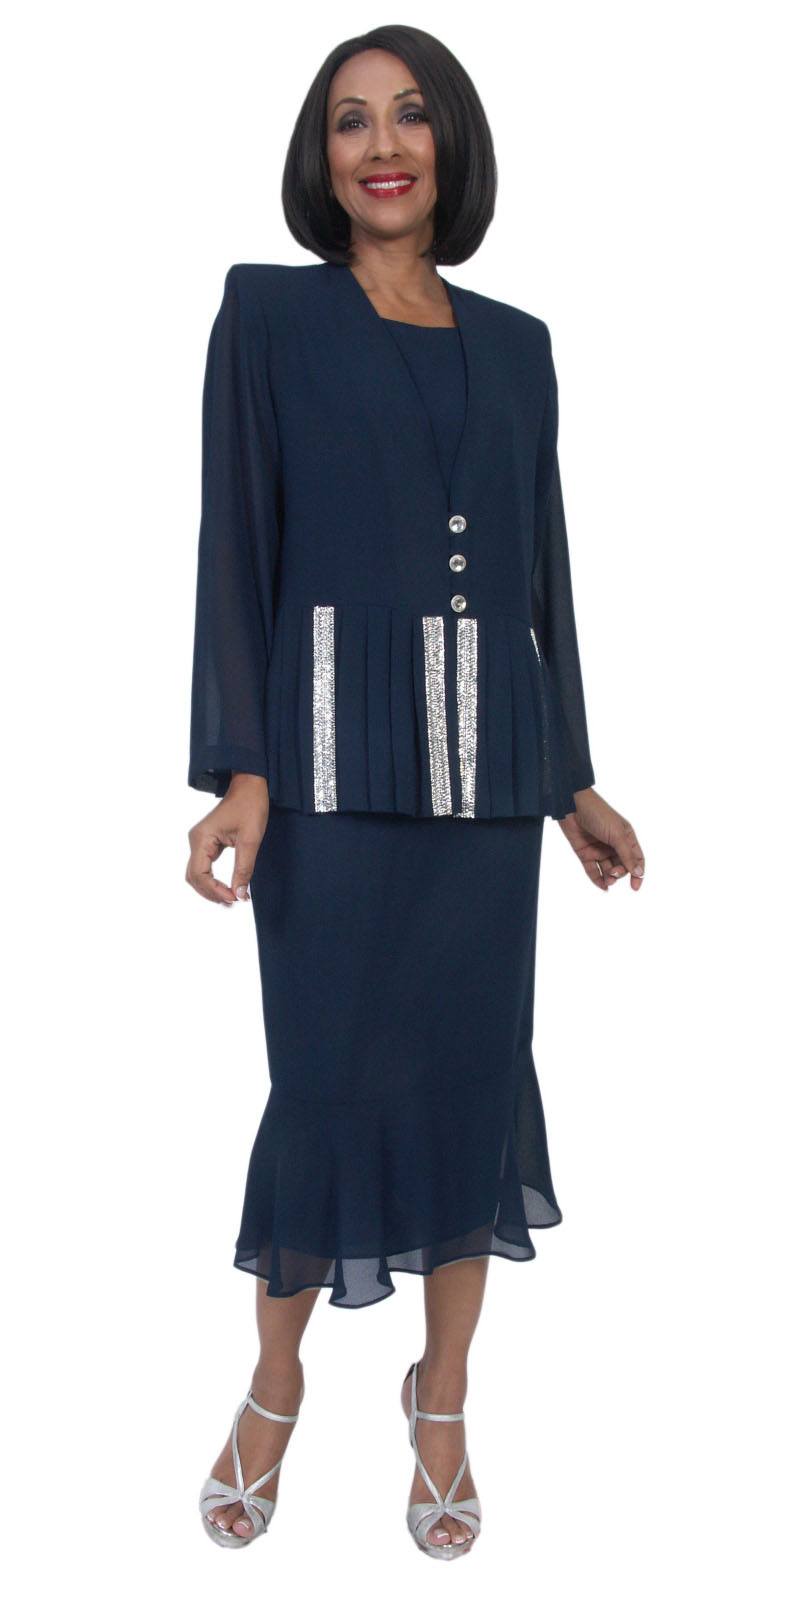 Hosanna 5267 Plus Size 3 Piece Set Black Ankle Length Dress